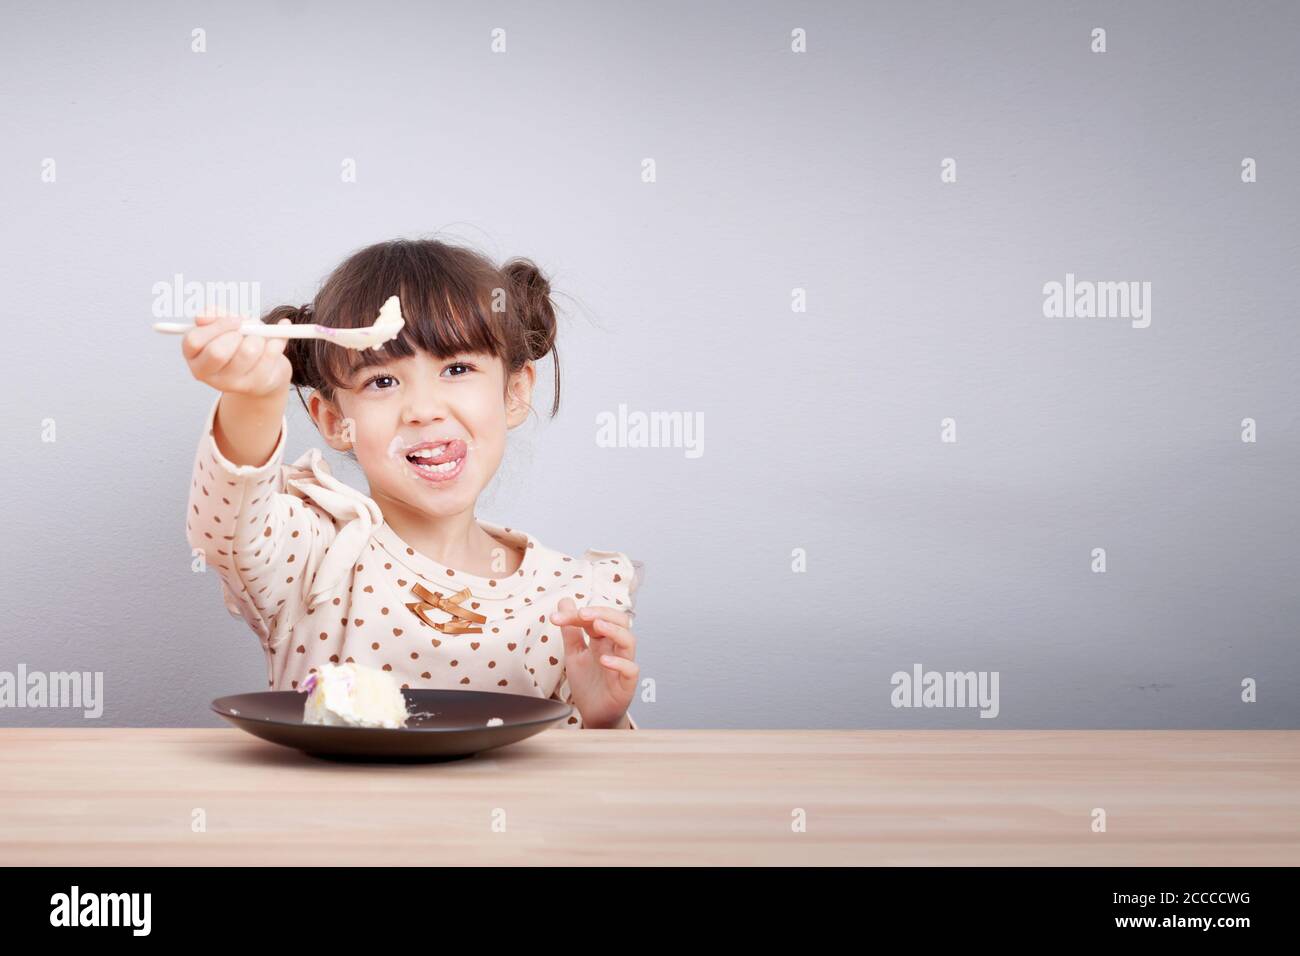 Les enfants aiment manger concept : Happy Little cute fille de race mixte aiment manger un gâteau avec smiley visage , langue bâton avec cuillère dans sa main Banque D'Images